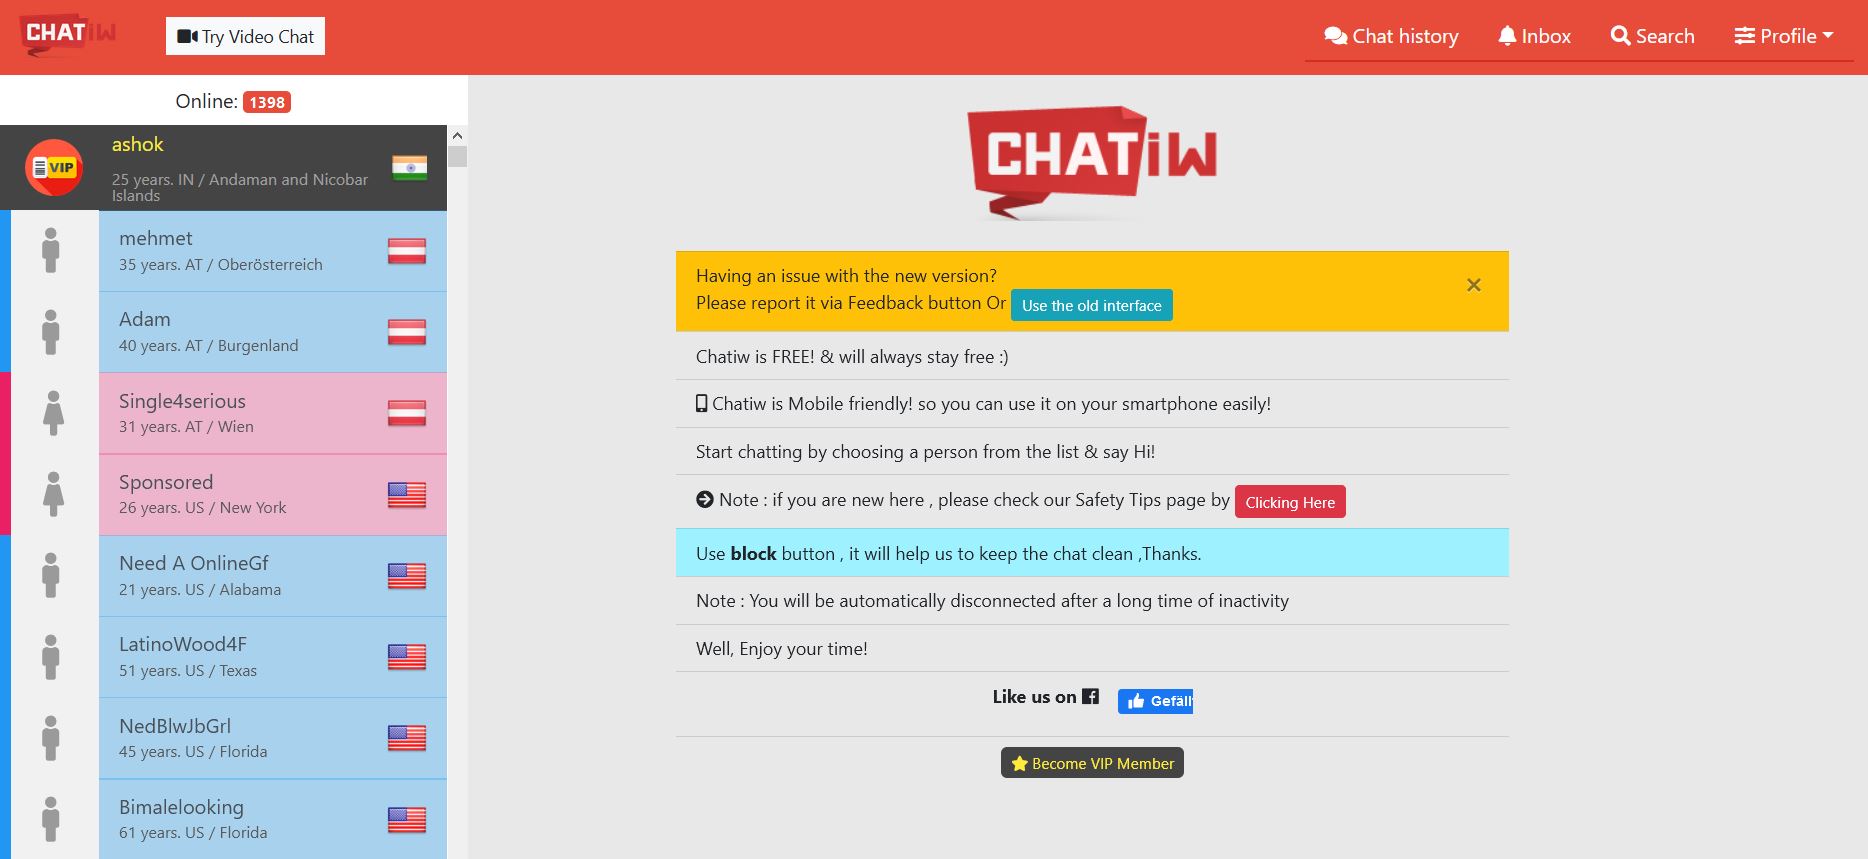 Ein englischsprachiger Chat ohne Registrierung